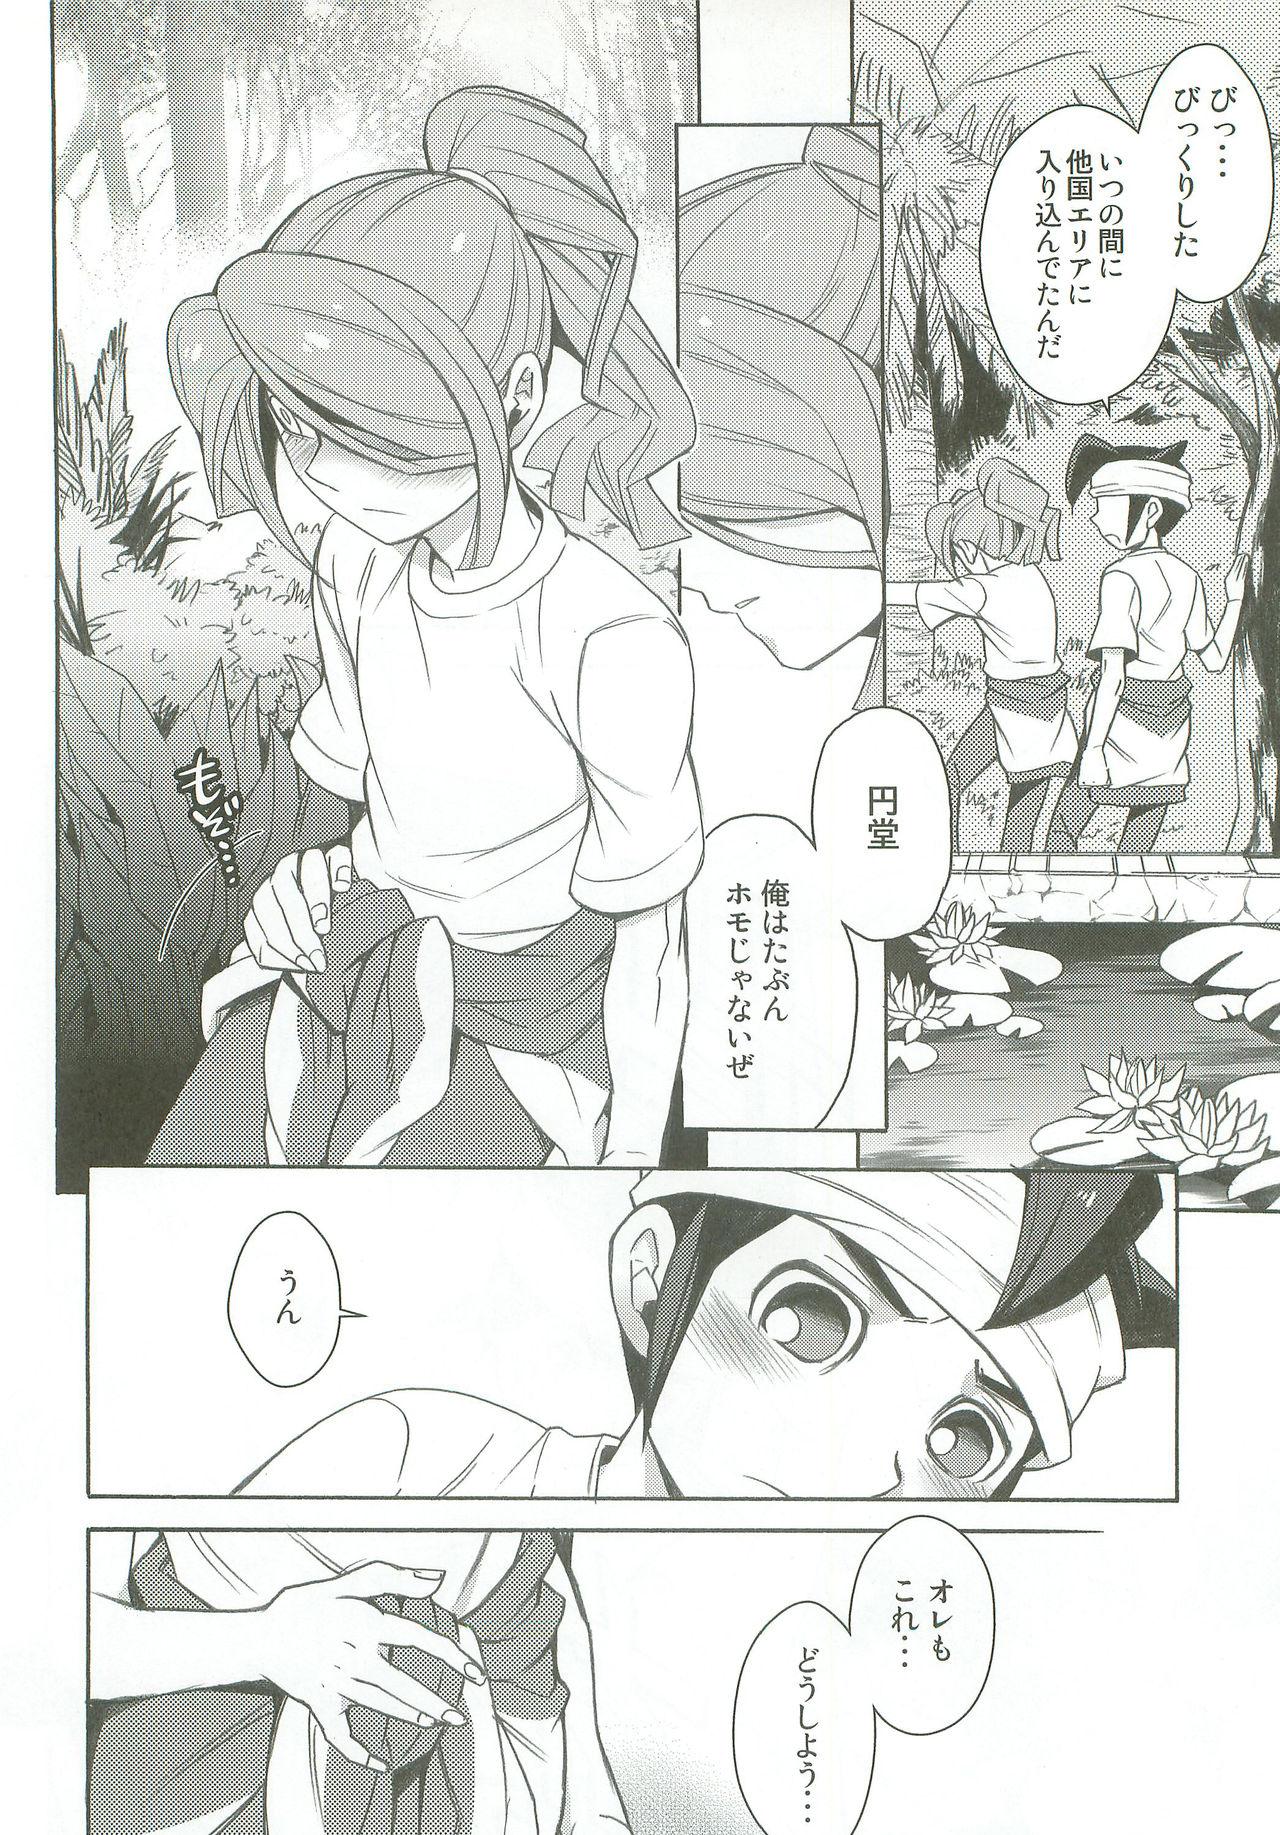 Edging Tachigui! side KazeEnKaze - Inazuma eleven Moan - Page 9